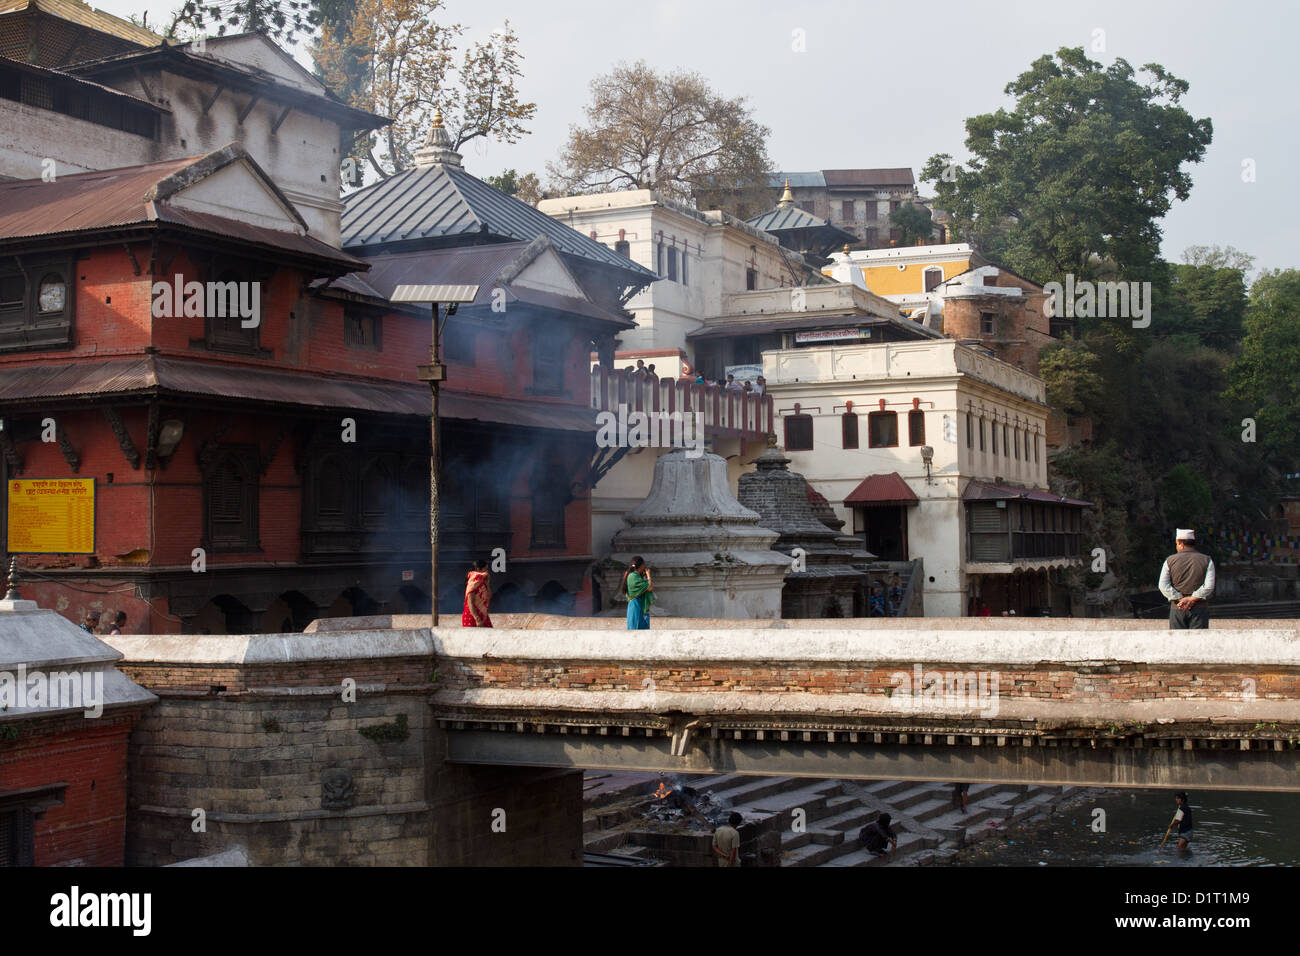 Les Ghats de gravure au temple de Pashupatinath sur la rivière Bagmati Kathmandu Népal Asie Banque D'Images